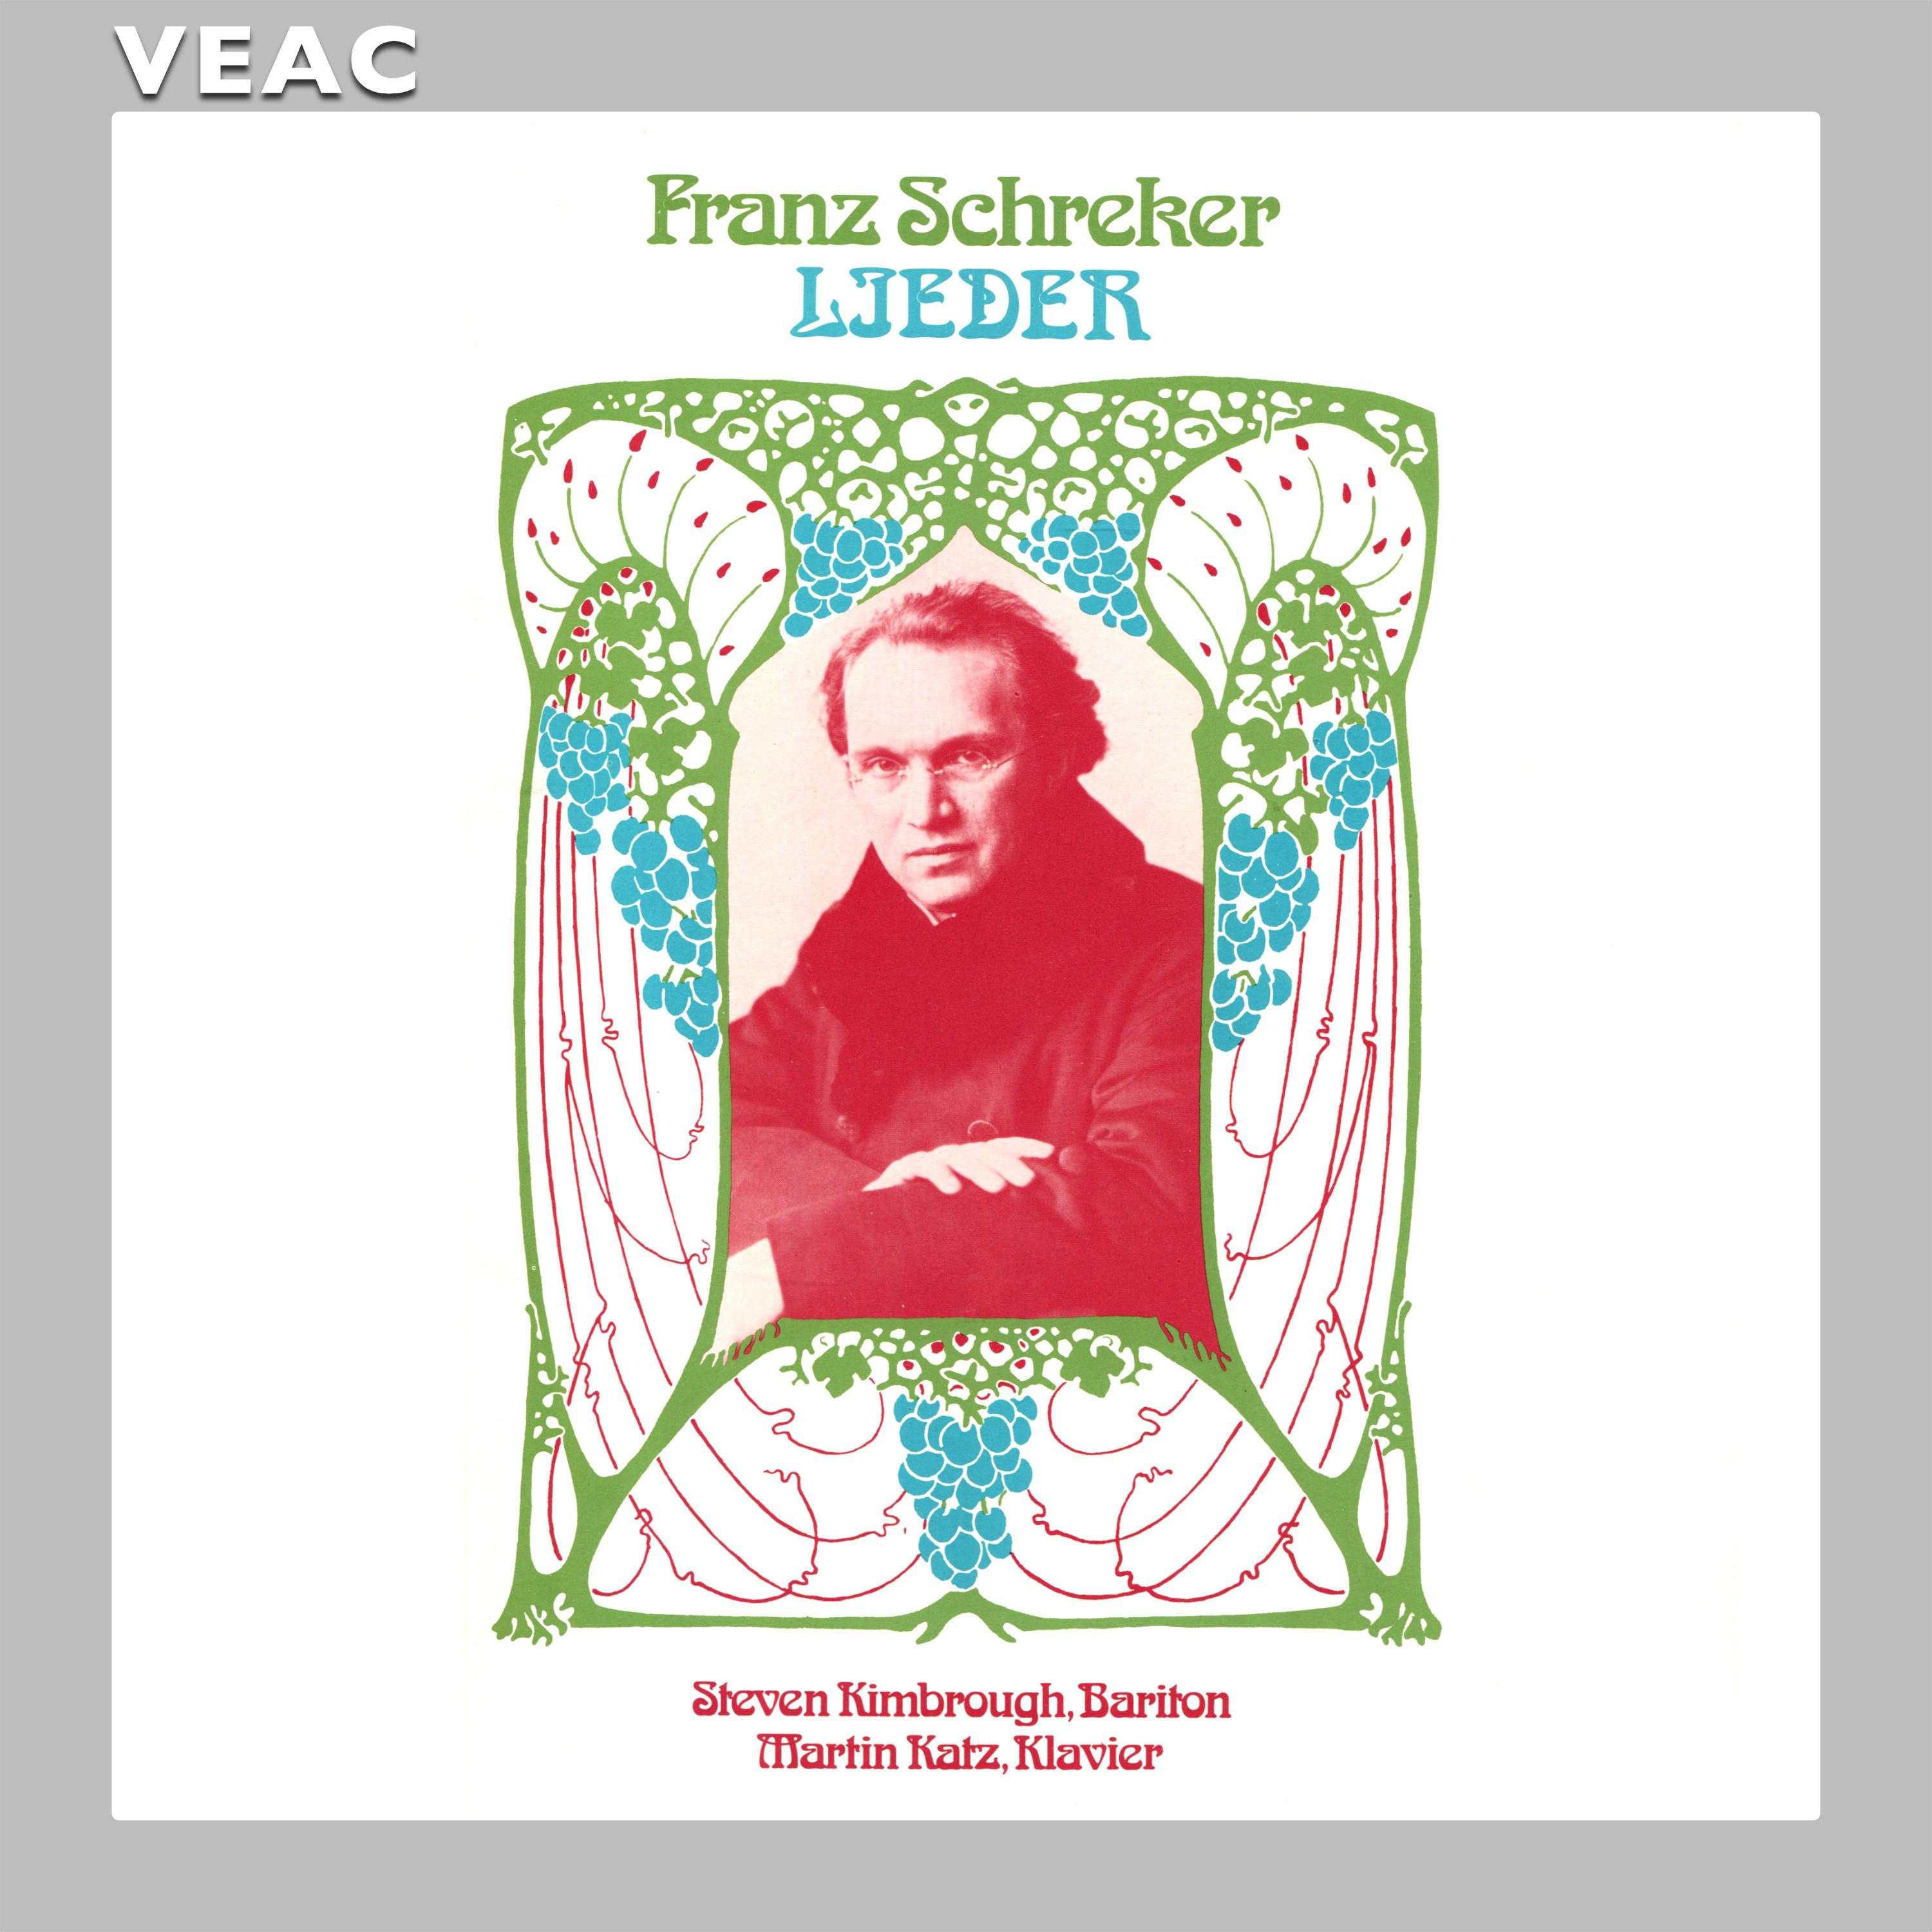 Franz Schreker: Ave Maria